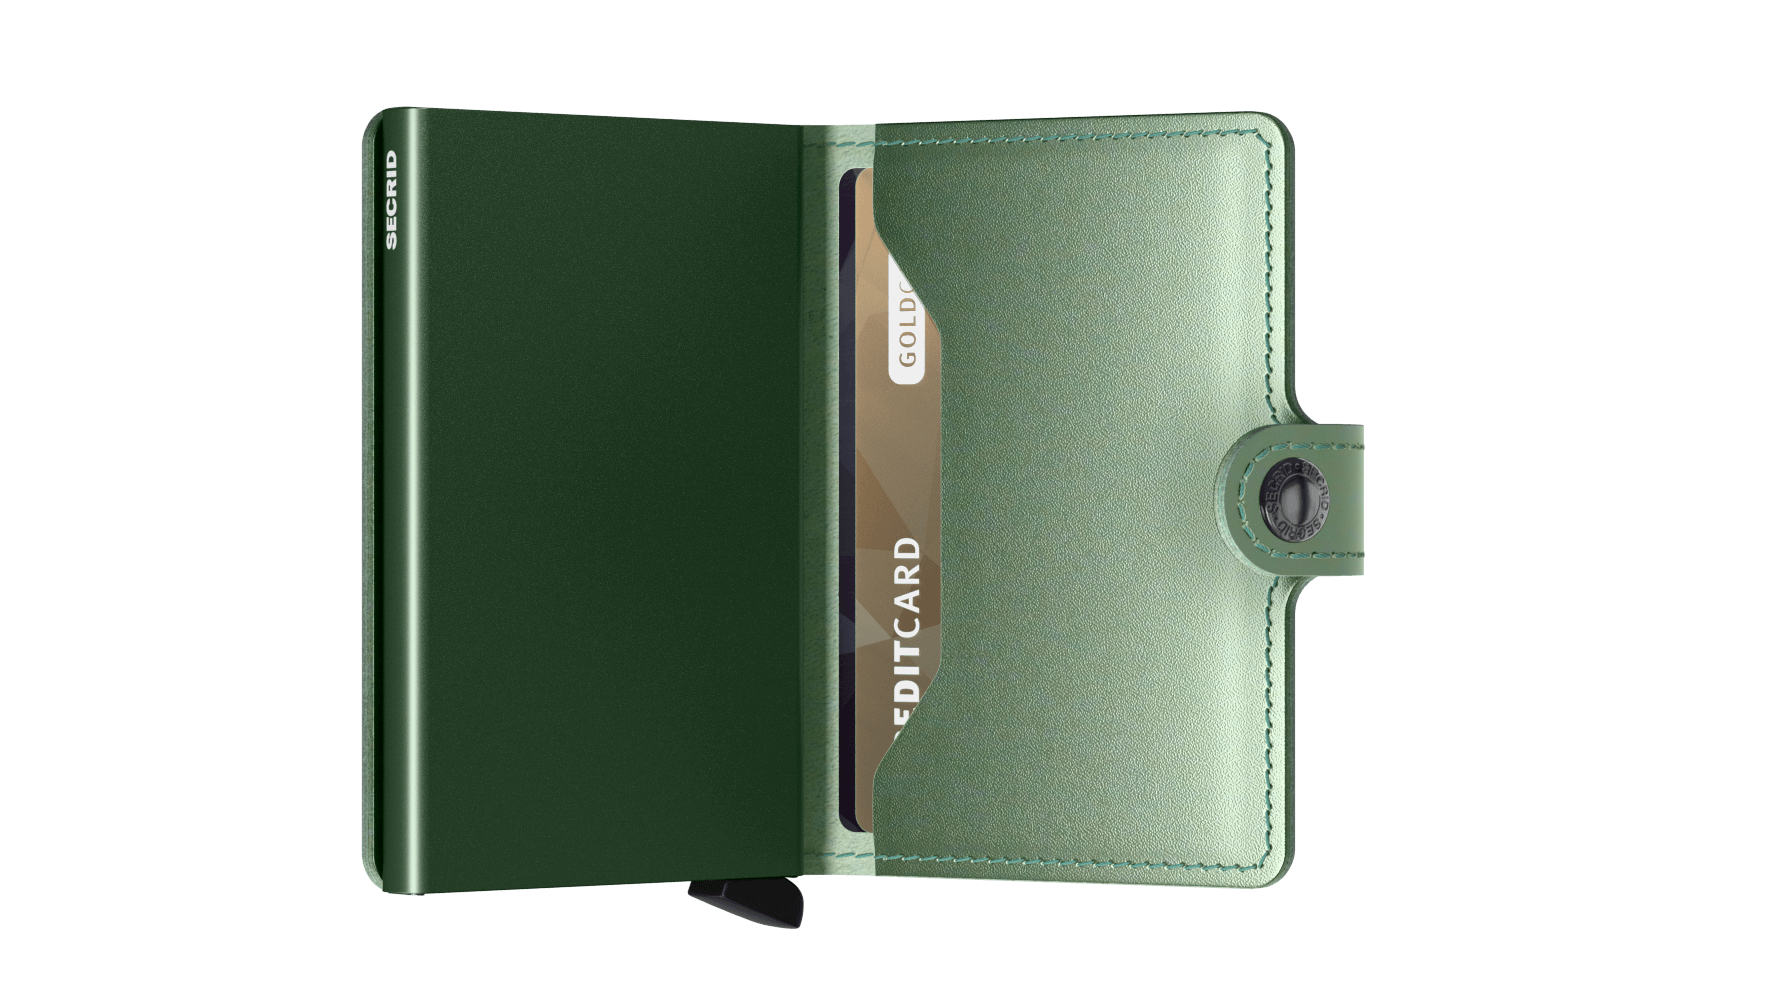 Miniwallet | Metallic Green Leather | by Secrid Wallets - Lifestory - Secrid Wallets